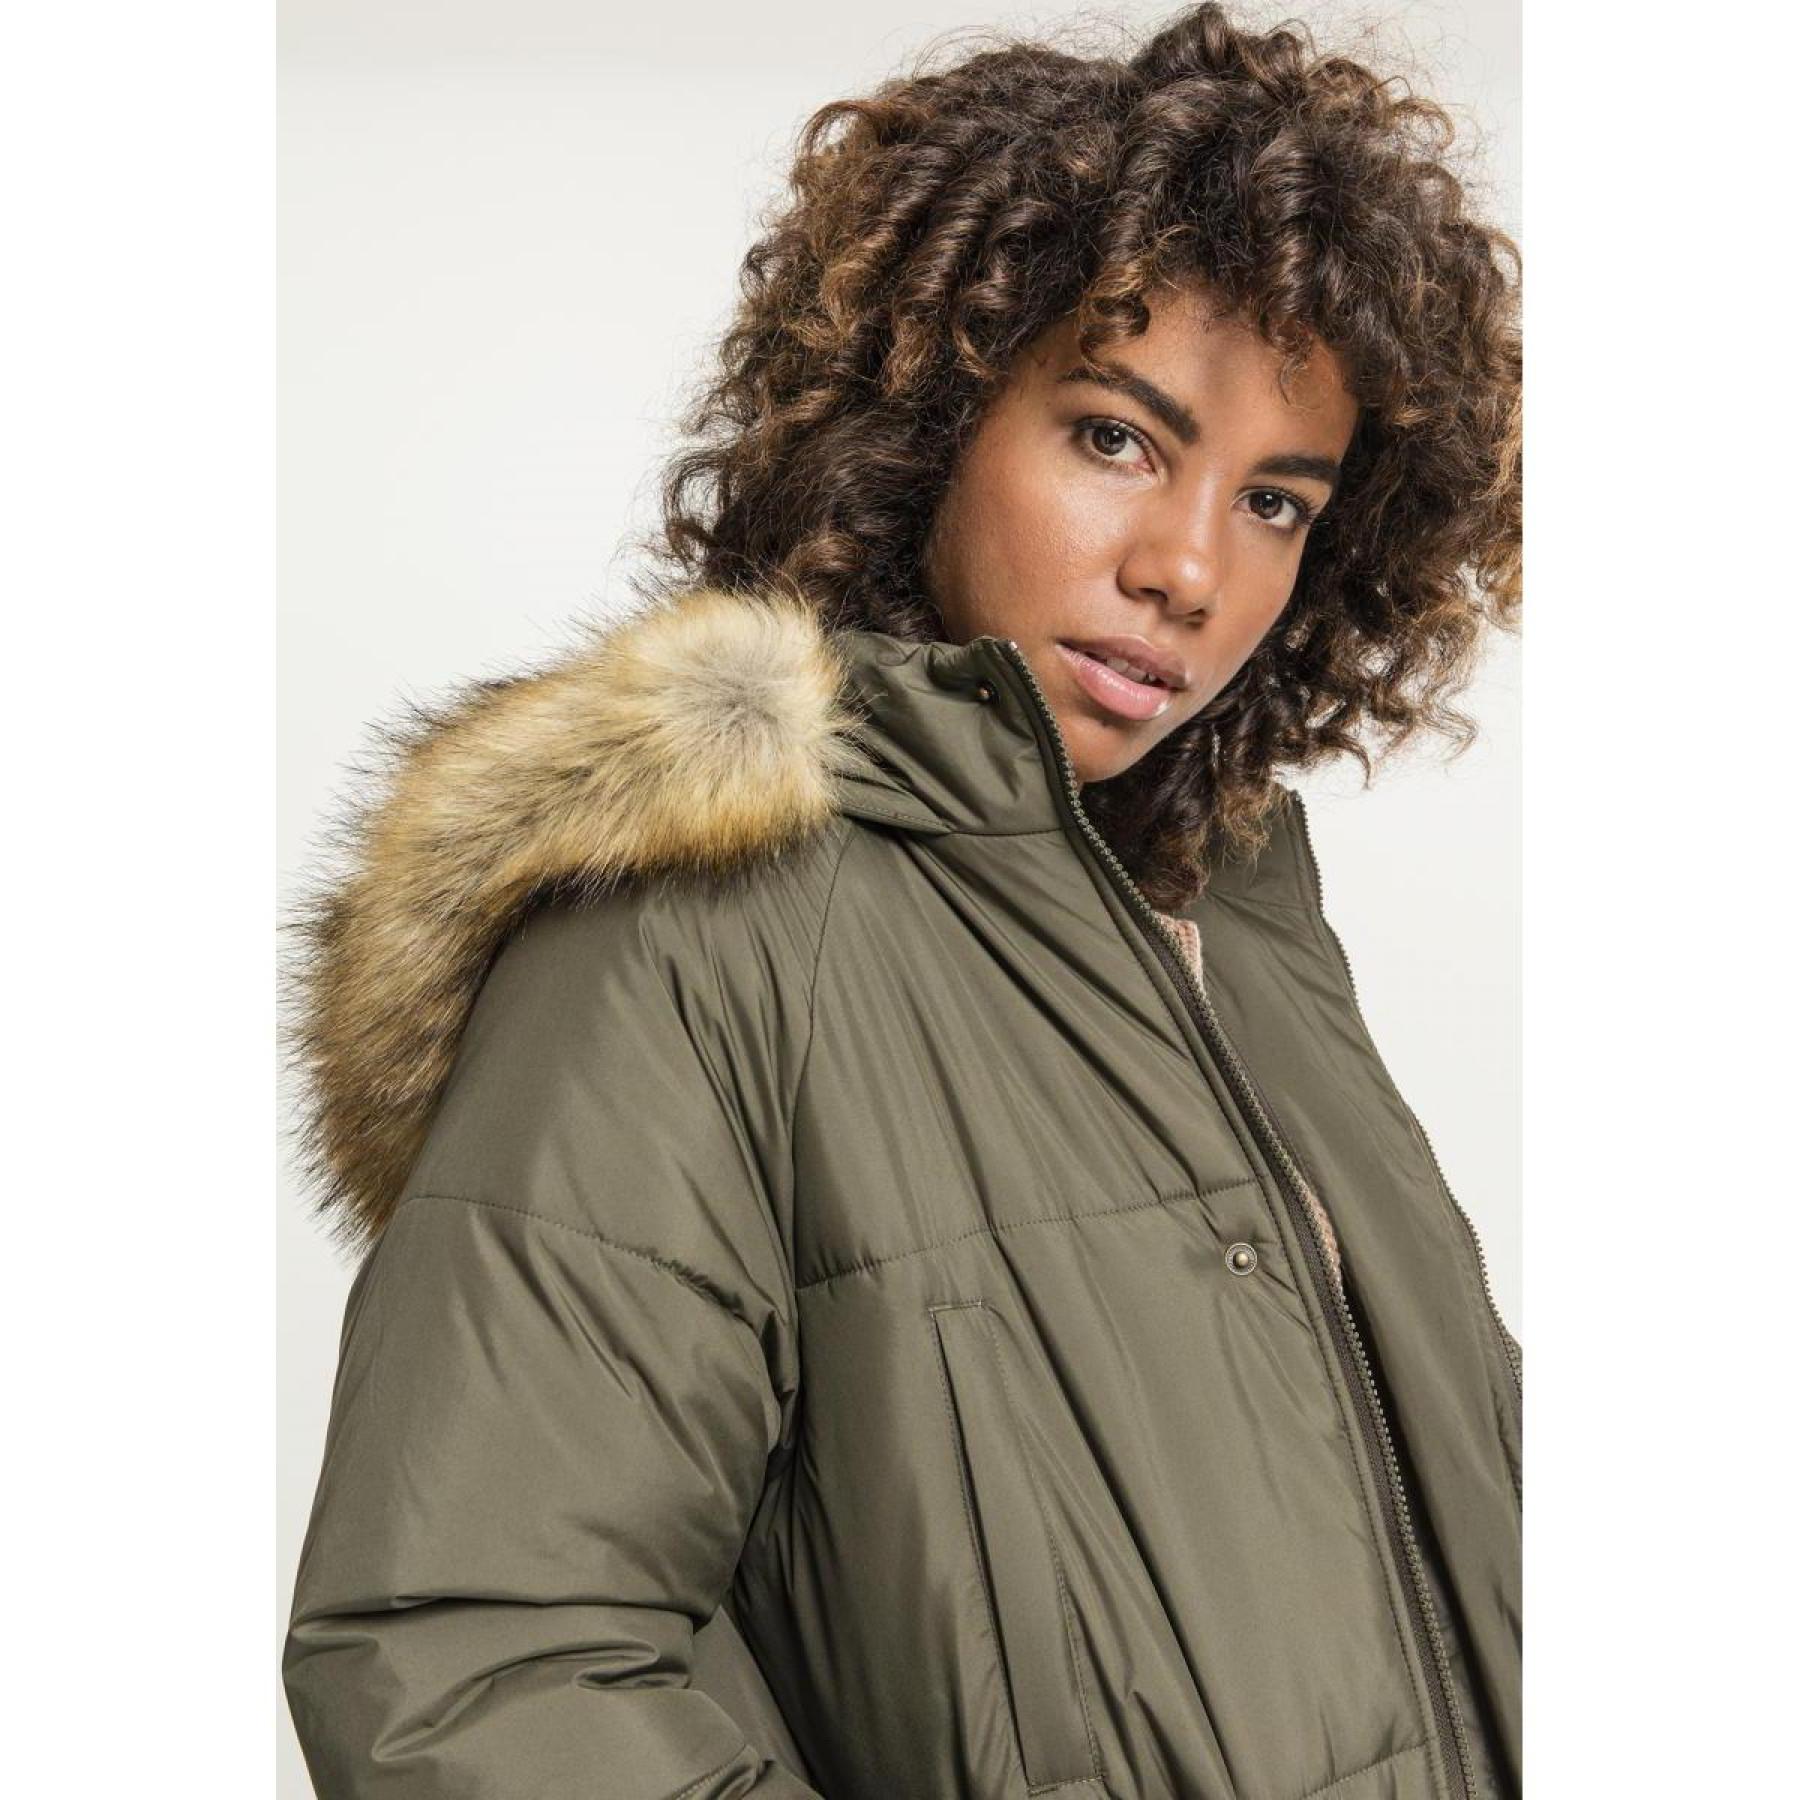 Women's Urban Classic Oversize coat parka